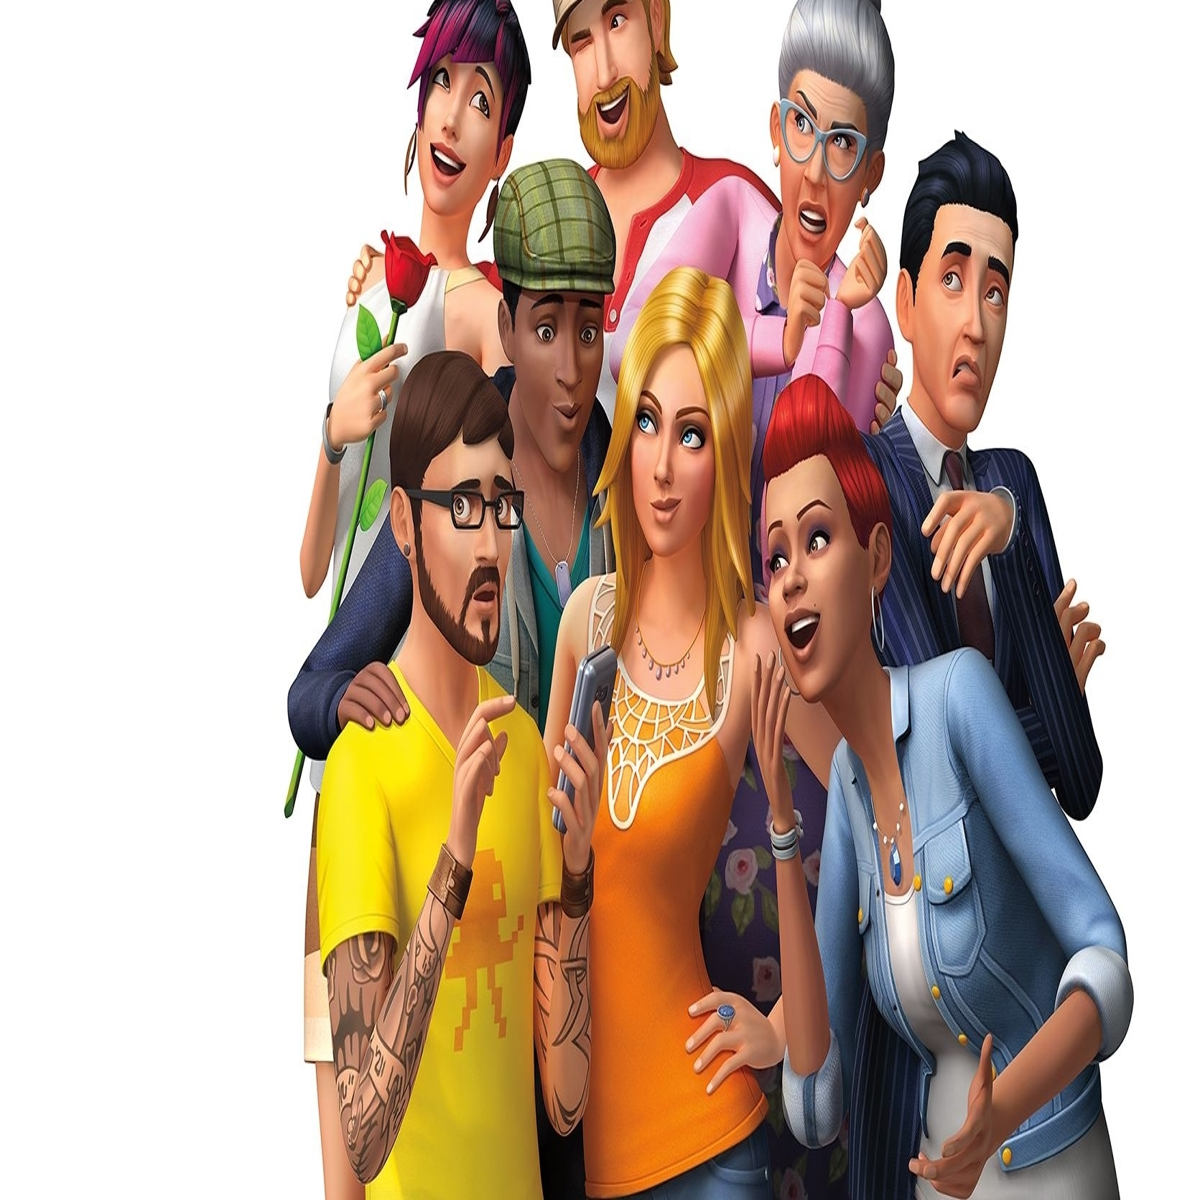 The Sims 4 grátis: como baixar o jogo no PC, Xbox e PlayStation